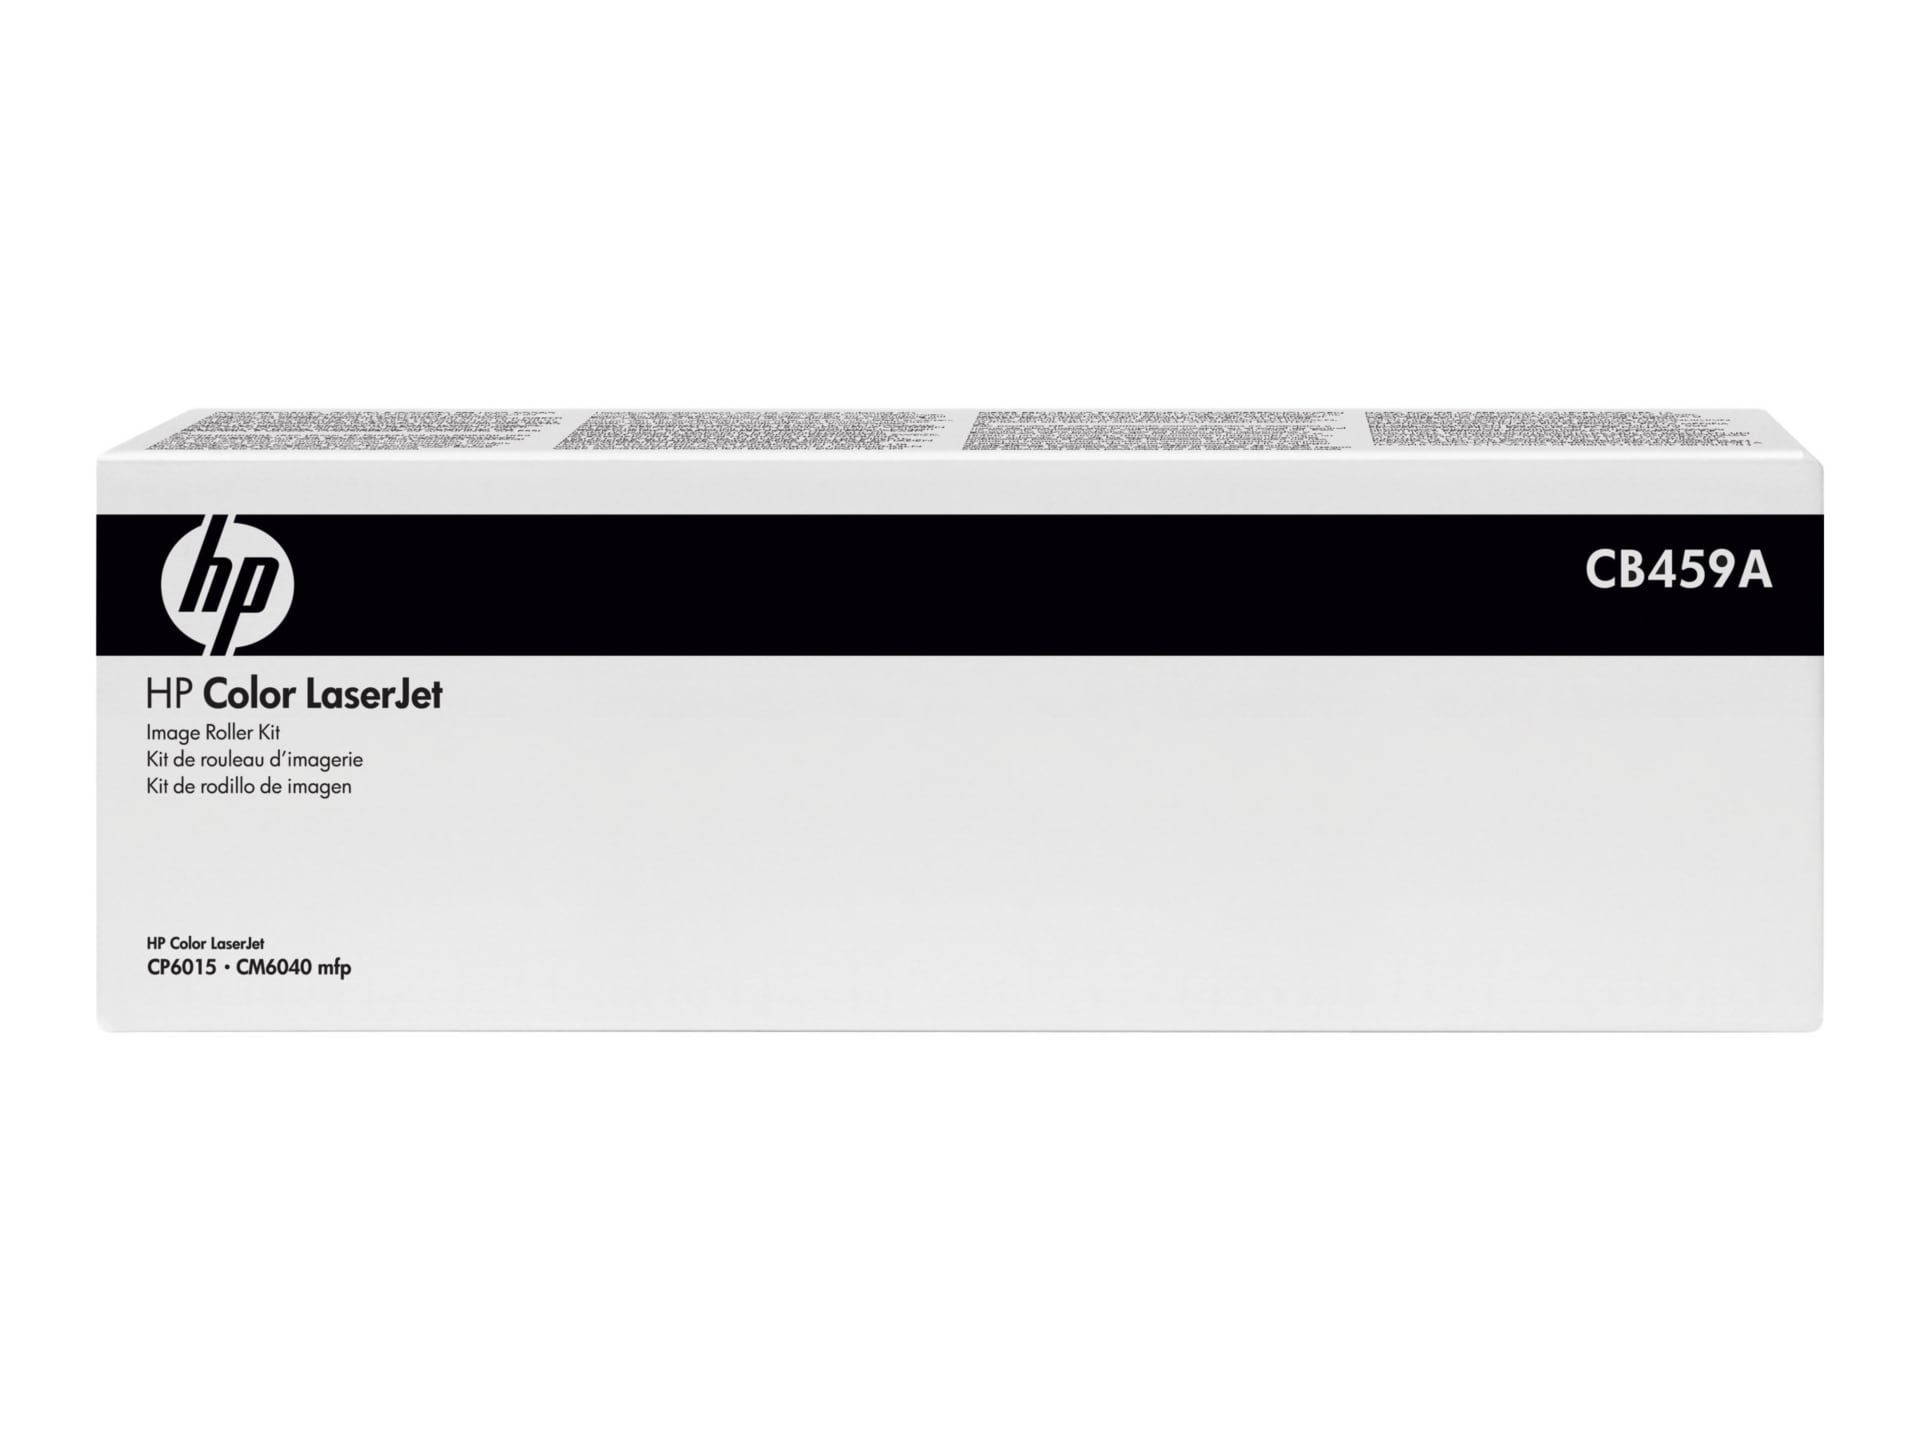 HP LaserJet Color Image Roller Kit